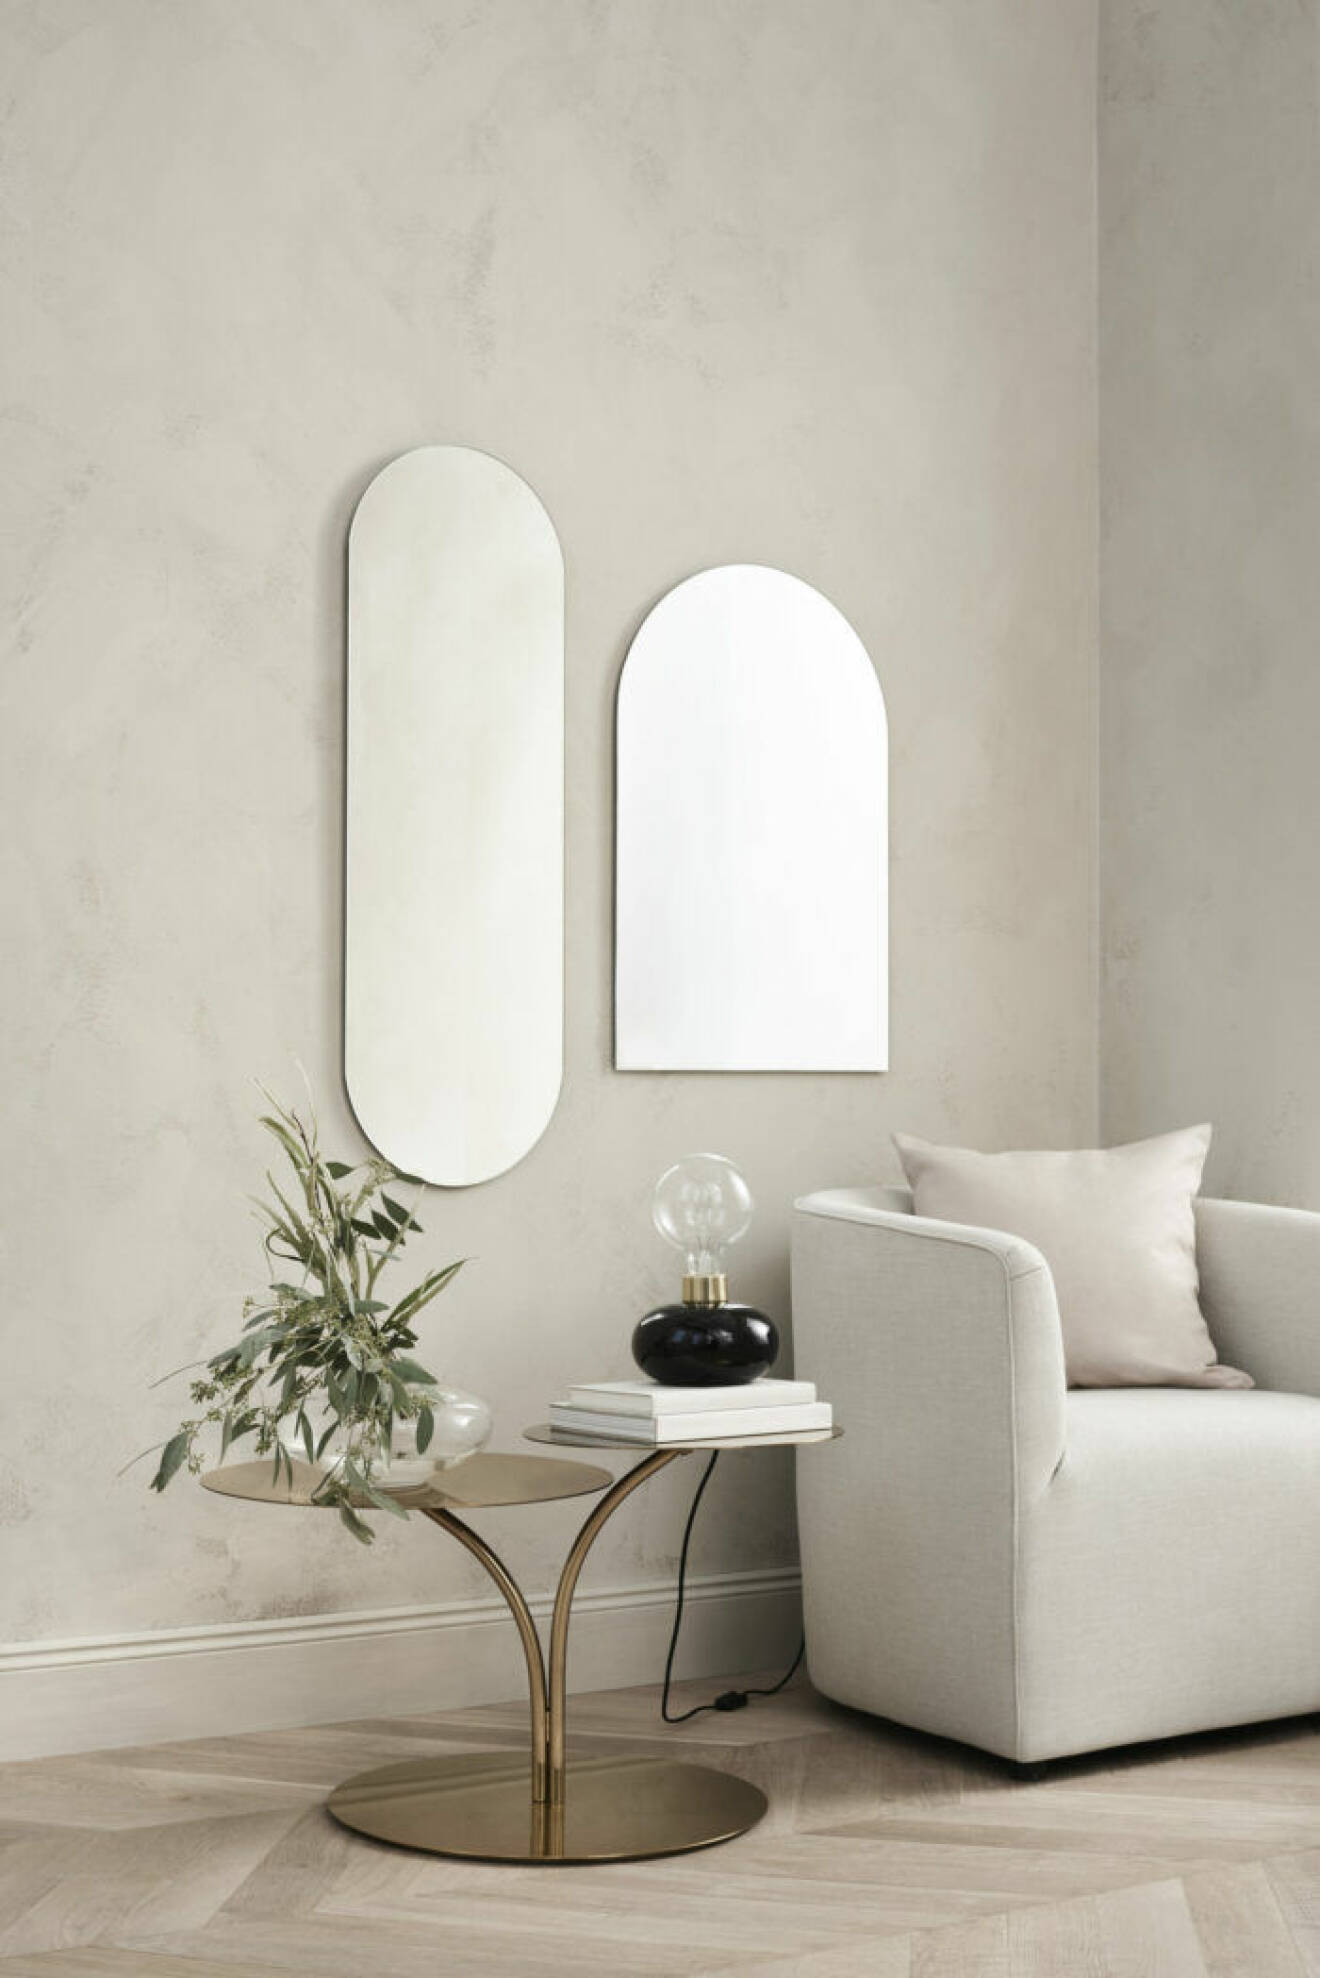 Speglar, bord och fåtölj från H&M Homes vårkollektion 2019 